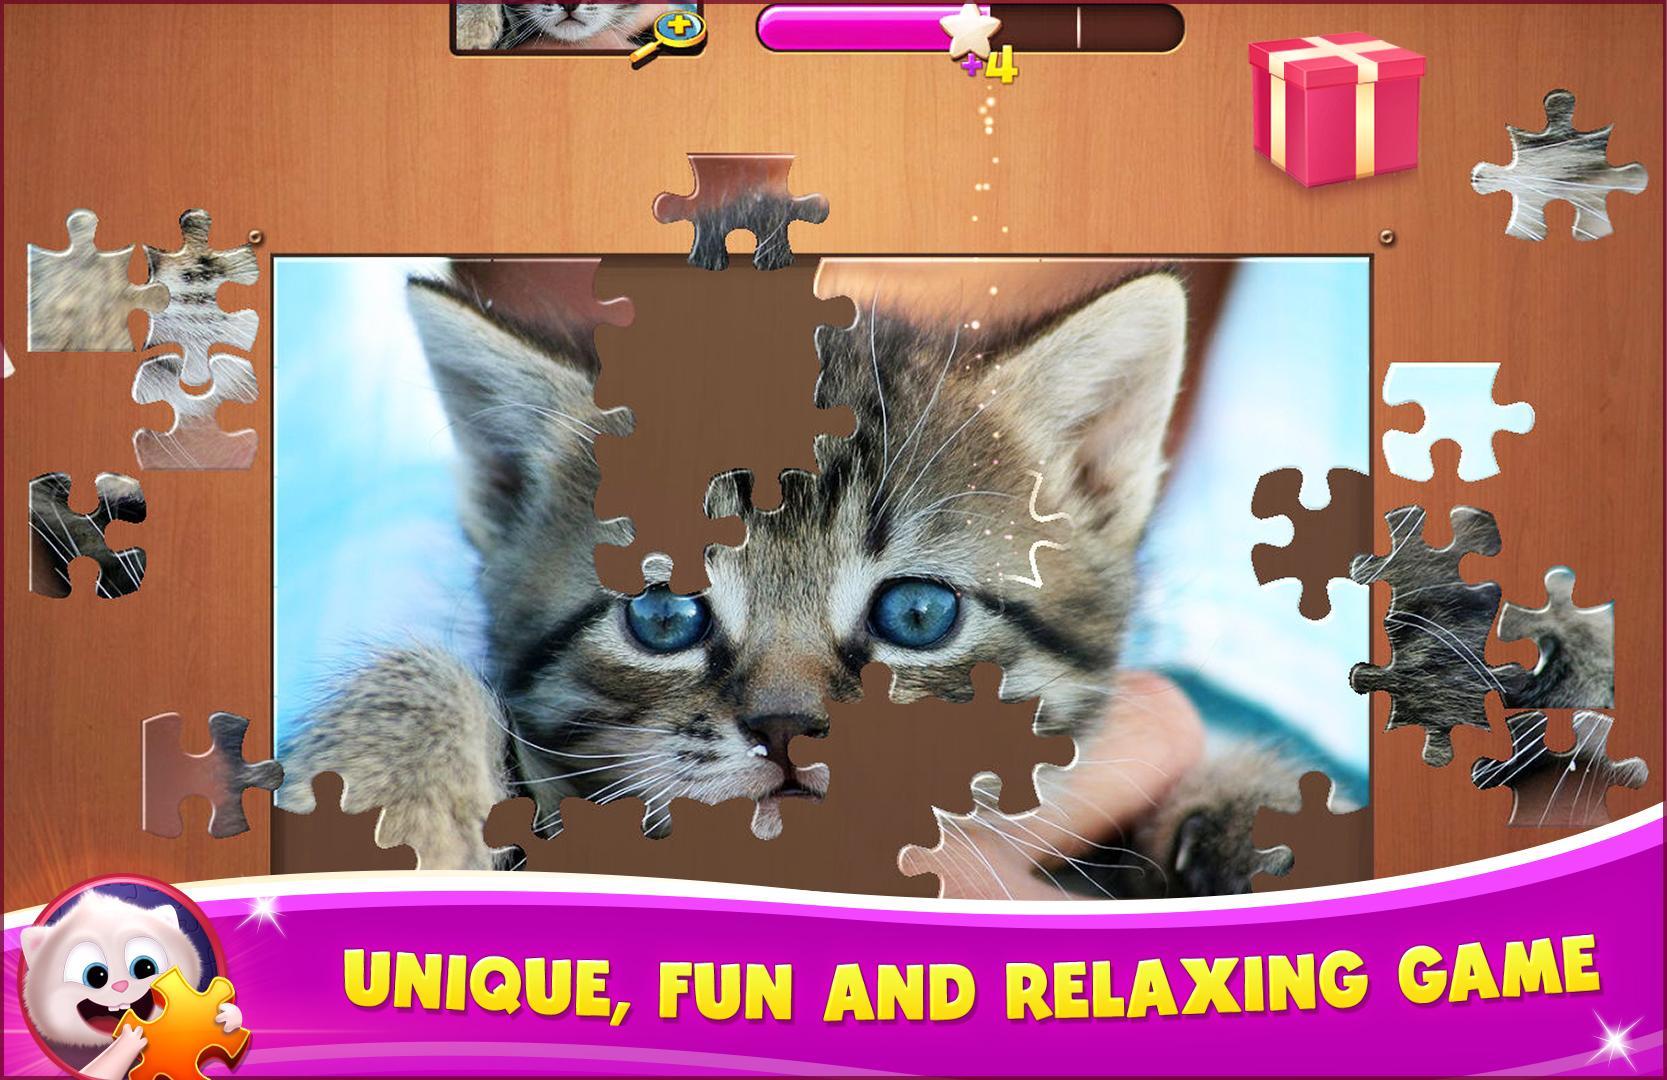 Screenshot 1 of Juegos de rompecabezas con imágenes 1.0.8